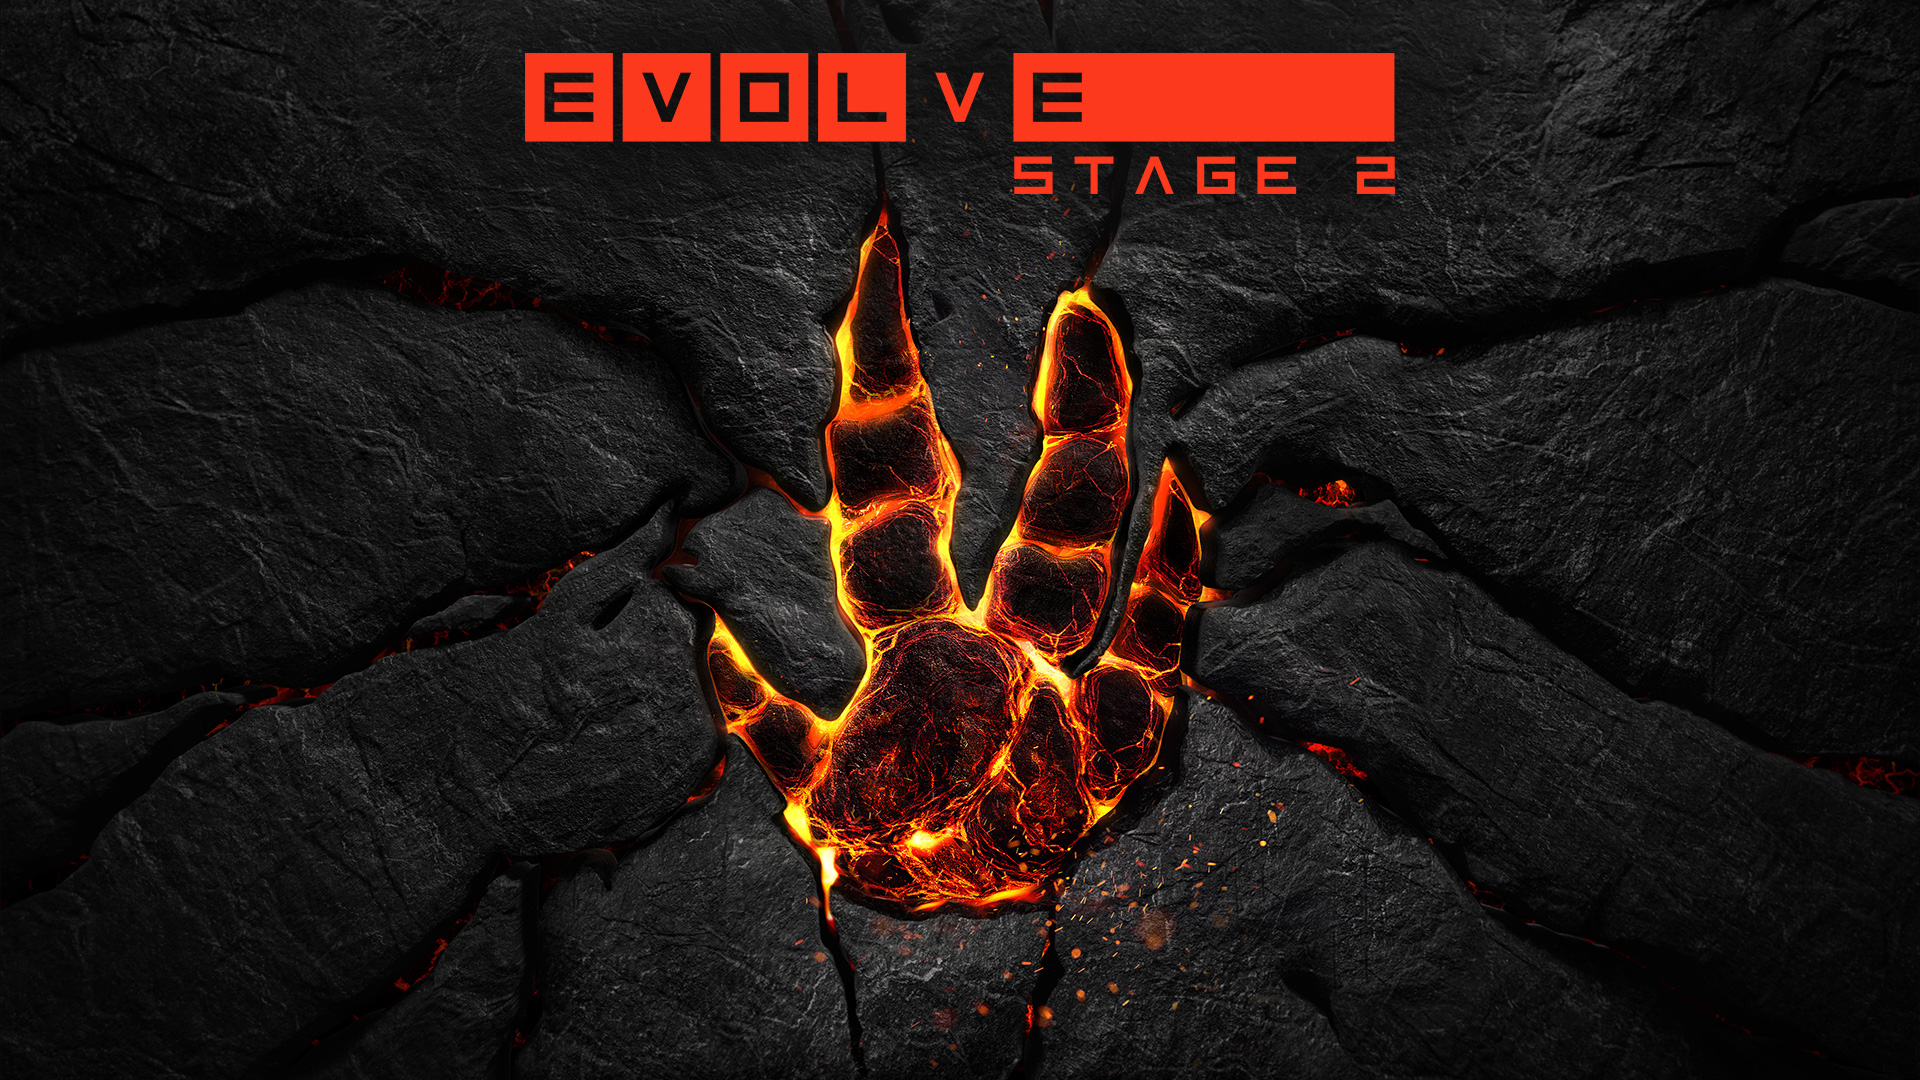 Evolve è da oggi free-to-play nello Stage 2